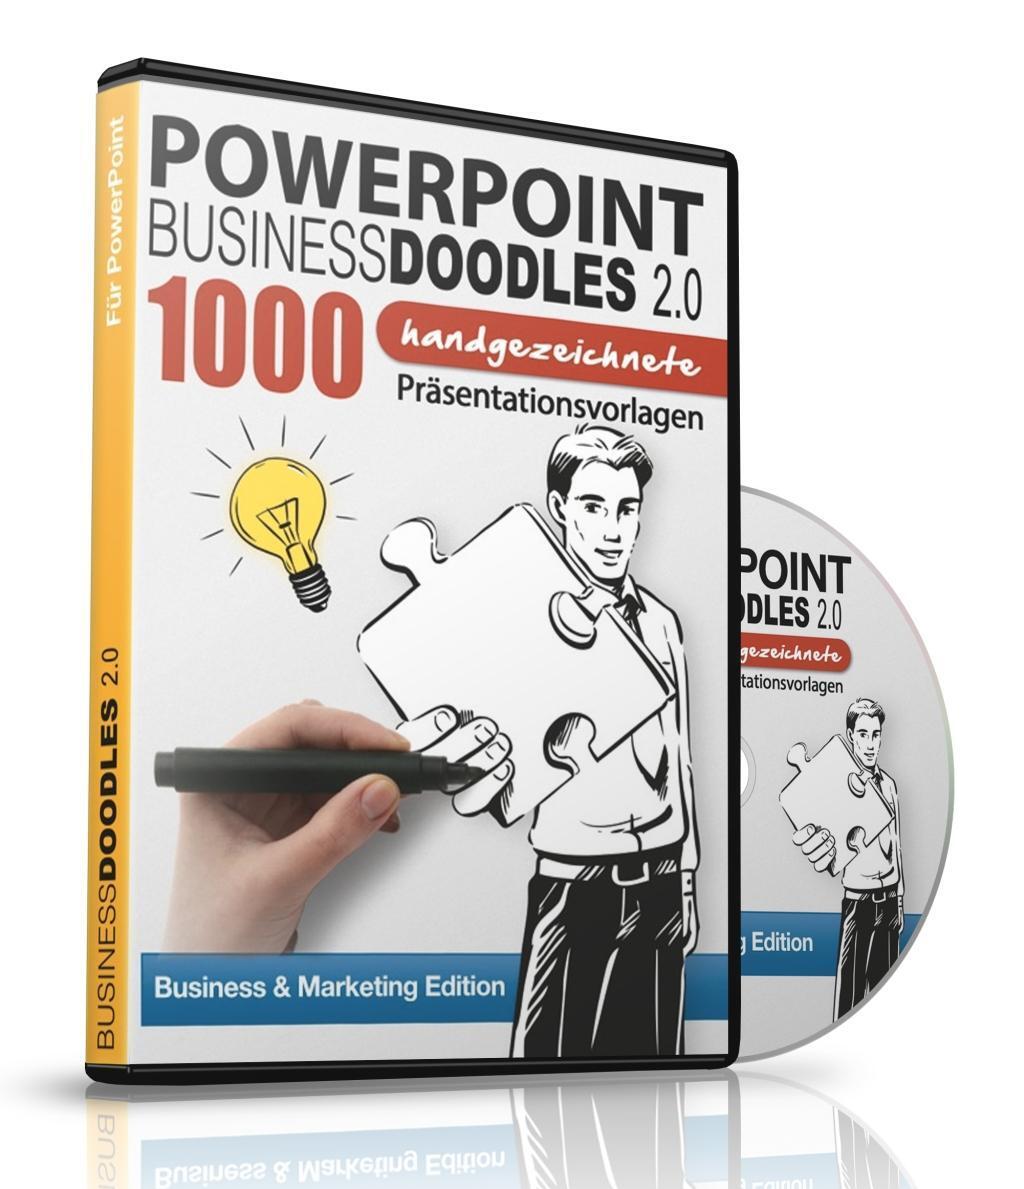 Cover: 661799689861 | PowerPoint BusinessDoodles 2.0, 1000 Handgezeichnete...